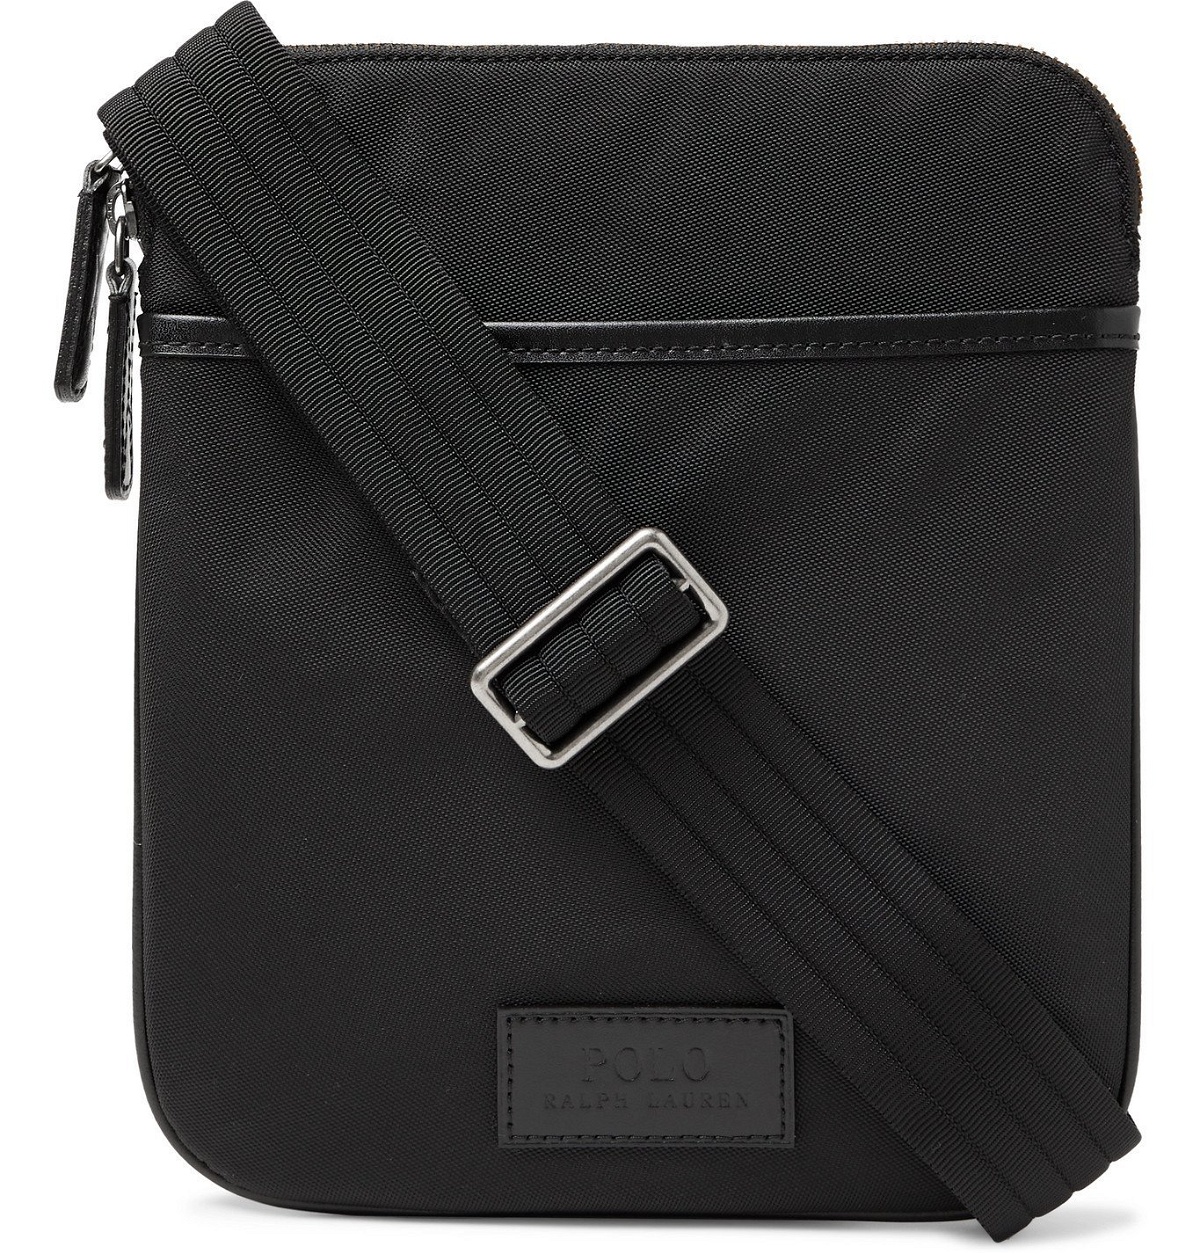 POLO RALPH LAUREN - Leather-Trimmed Nylon Messenger Bag - Black Polo ...